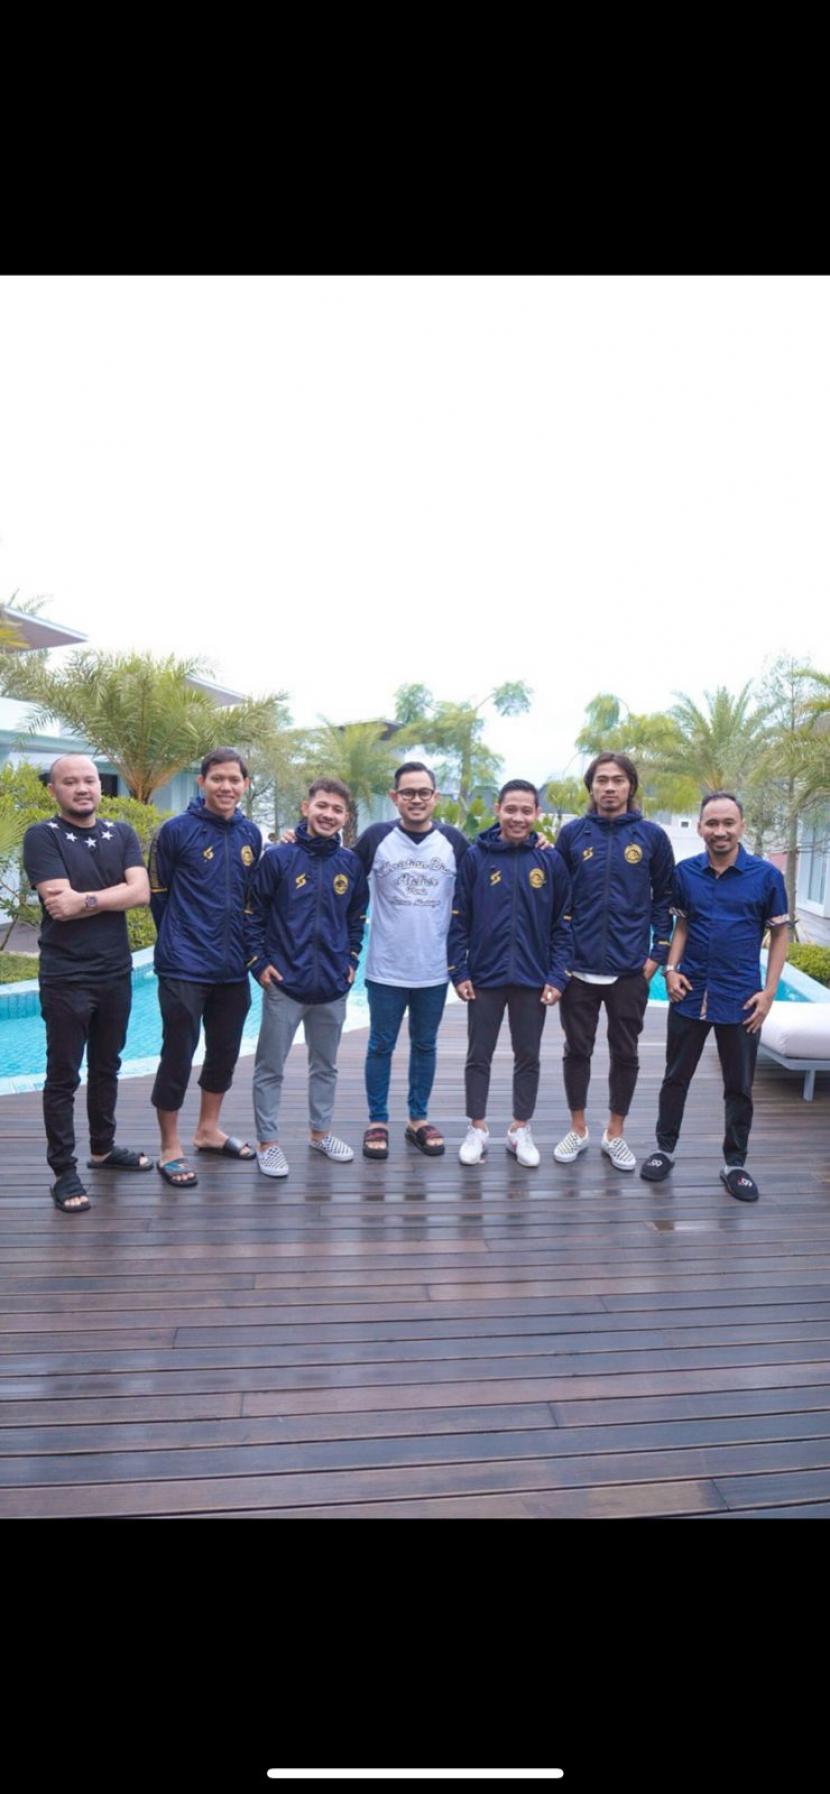 Manajemen Arema FC menambah empat pemain baru untuk melengkapi tim pada musim depan. Keempat pemain tersebut antara lain Evan Dimas, Adam Alis, Gian Zola dan Rendika Rama. Perekrutan ini disebut-sebut sebagai awal mula era Los Galacticos atau tim bertabur bintang.